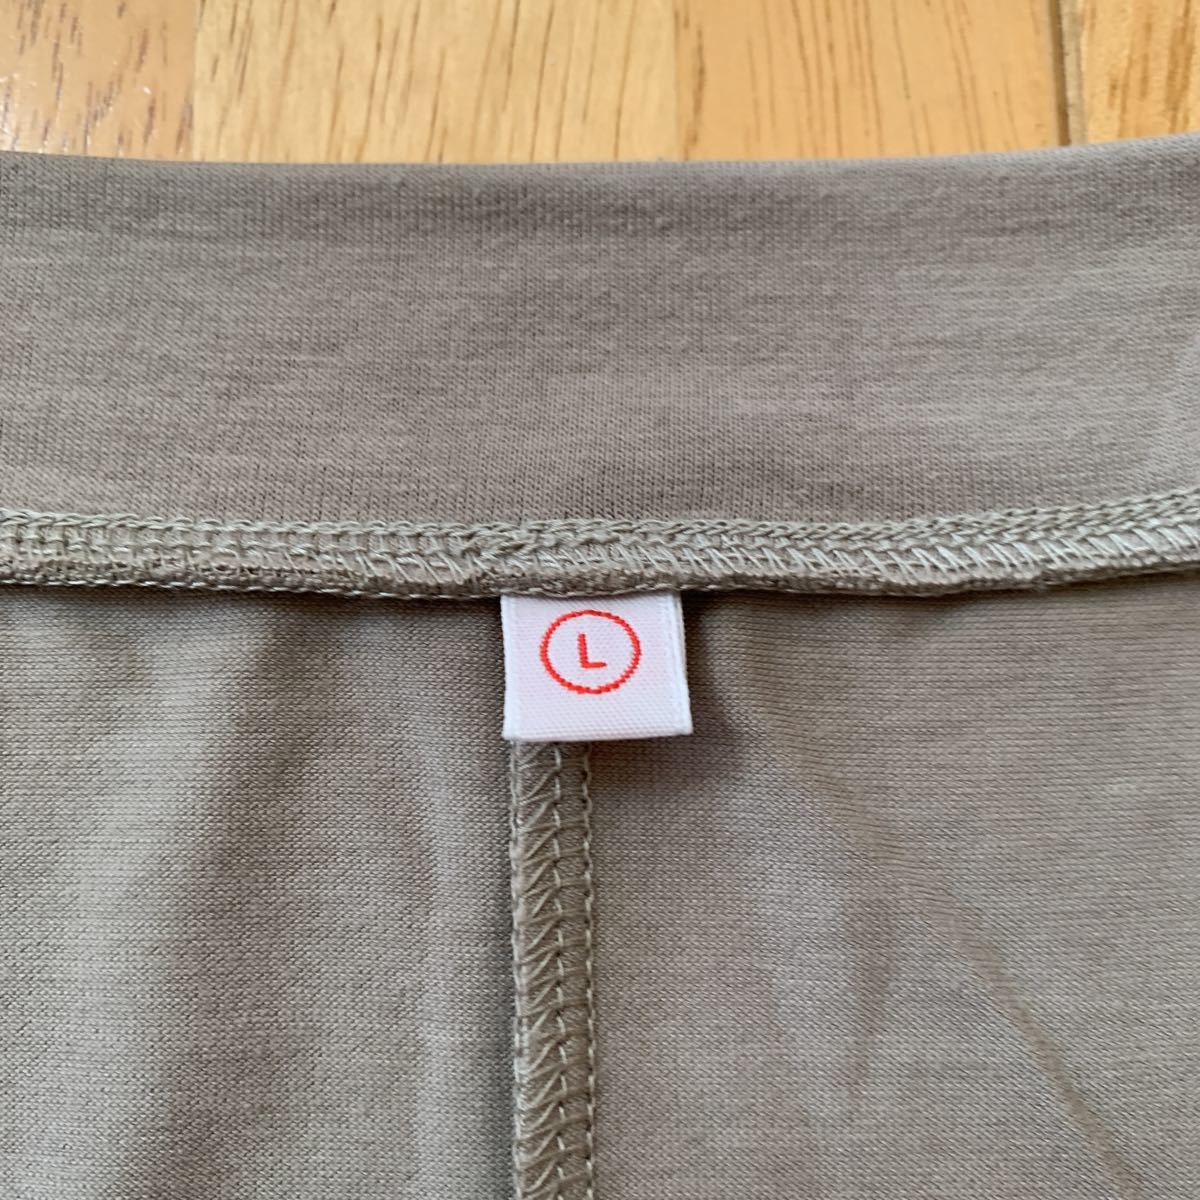 ユニクロ UNIQLO レディース トップス Tシャツ 濃いグレー WOMEN サイズ L 中古品 4.5回使用 美品 送料無料_画像4